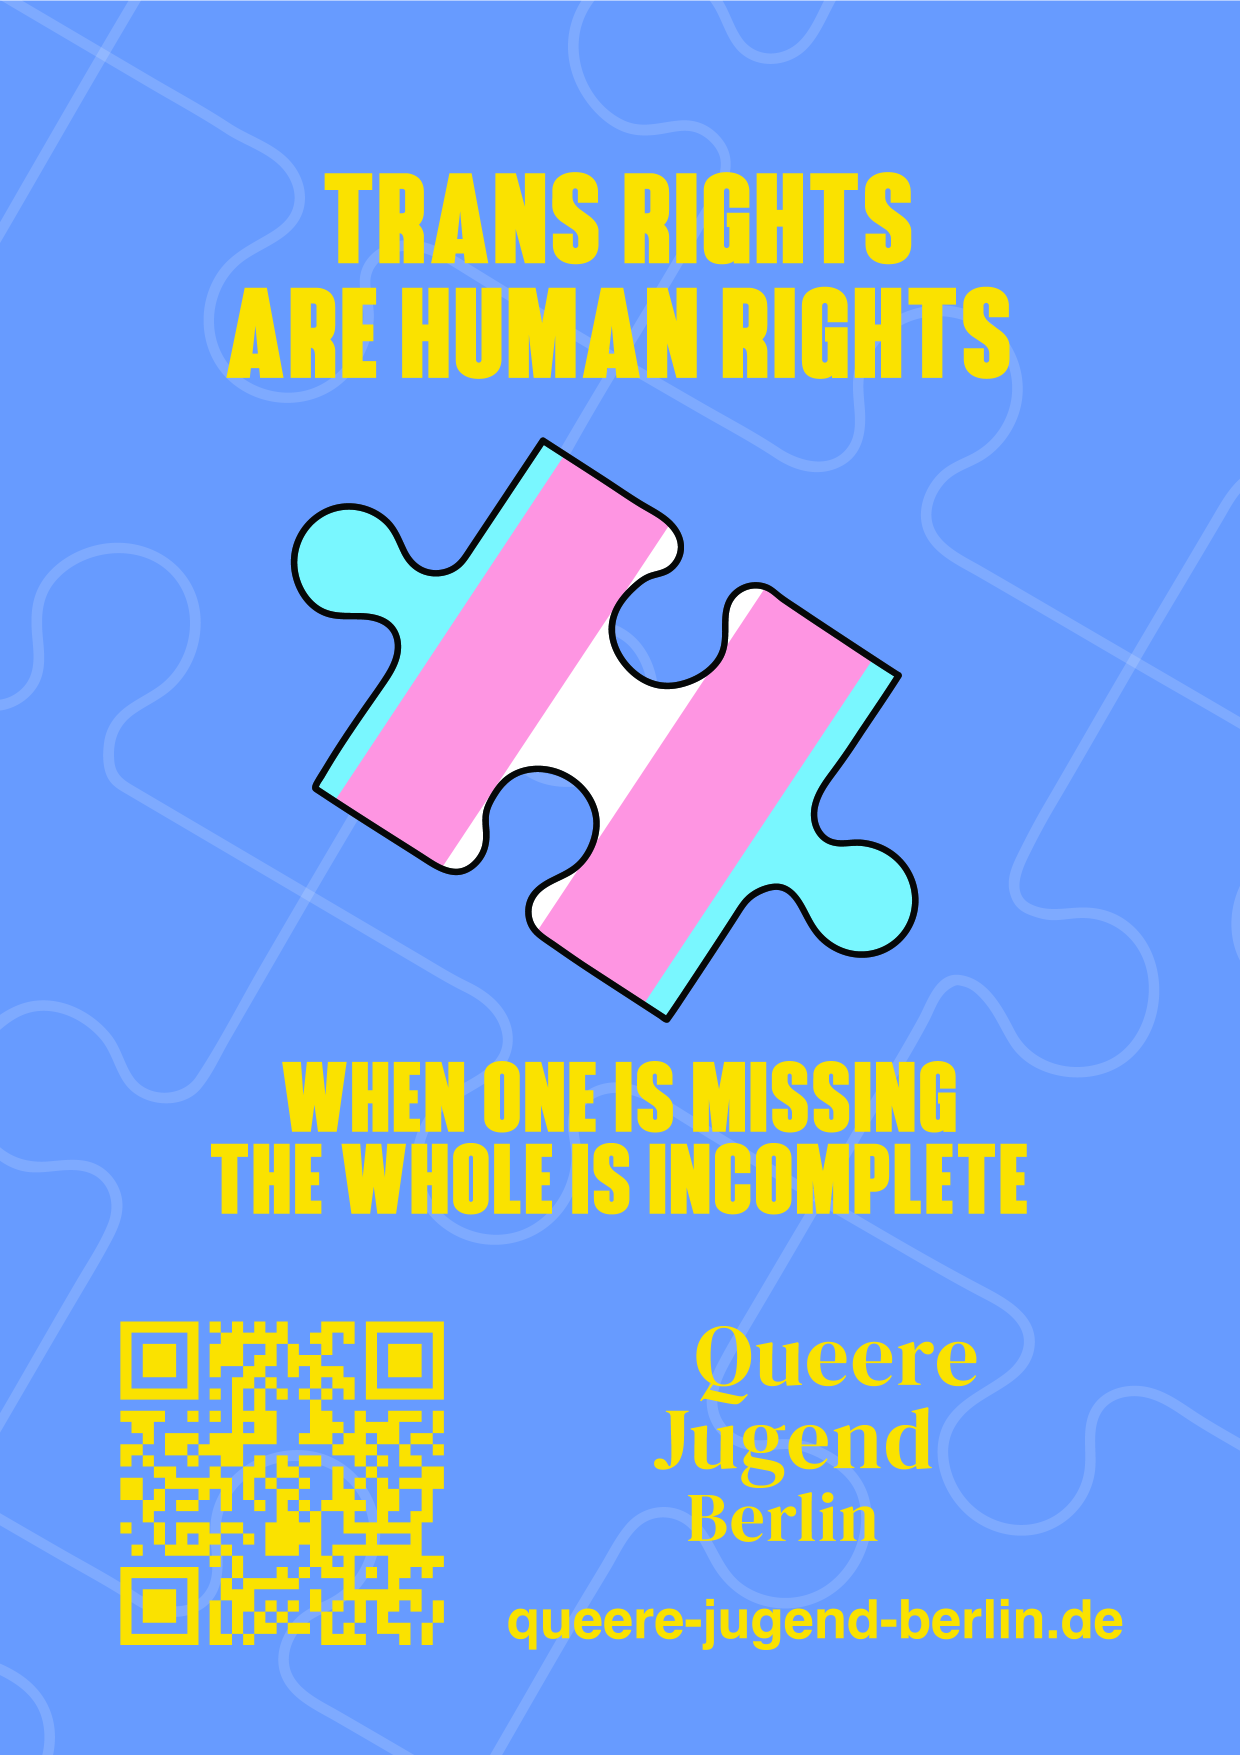 Zu sehen ist ein Puzzlestück mit der trans-Flagge  und der Überschrift "Transrights are humanrights".